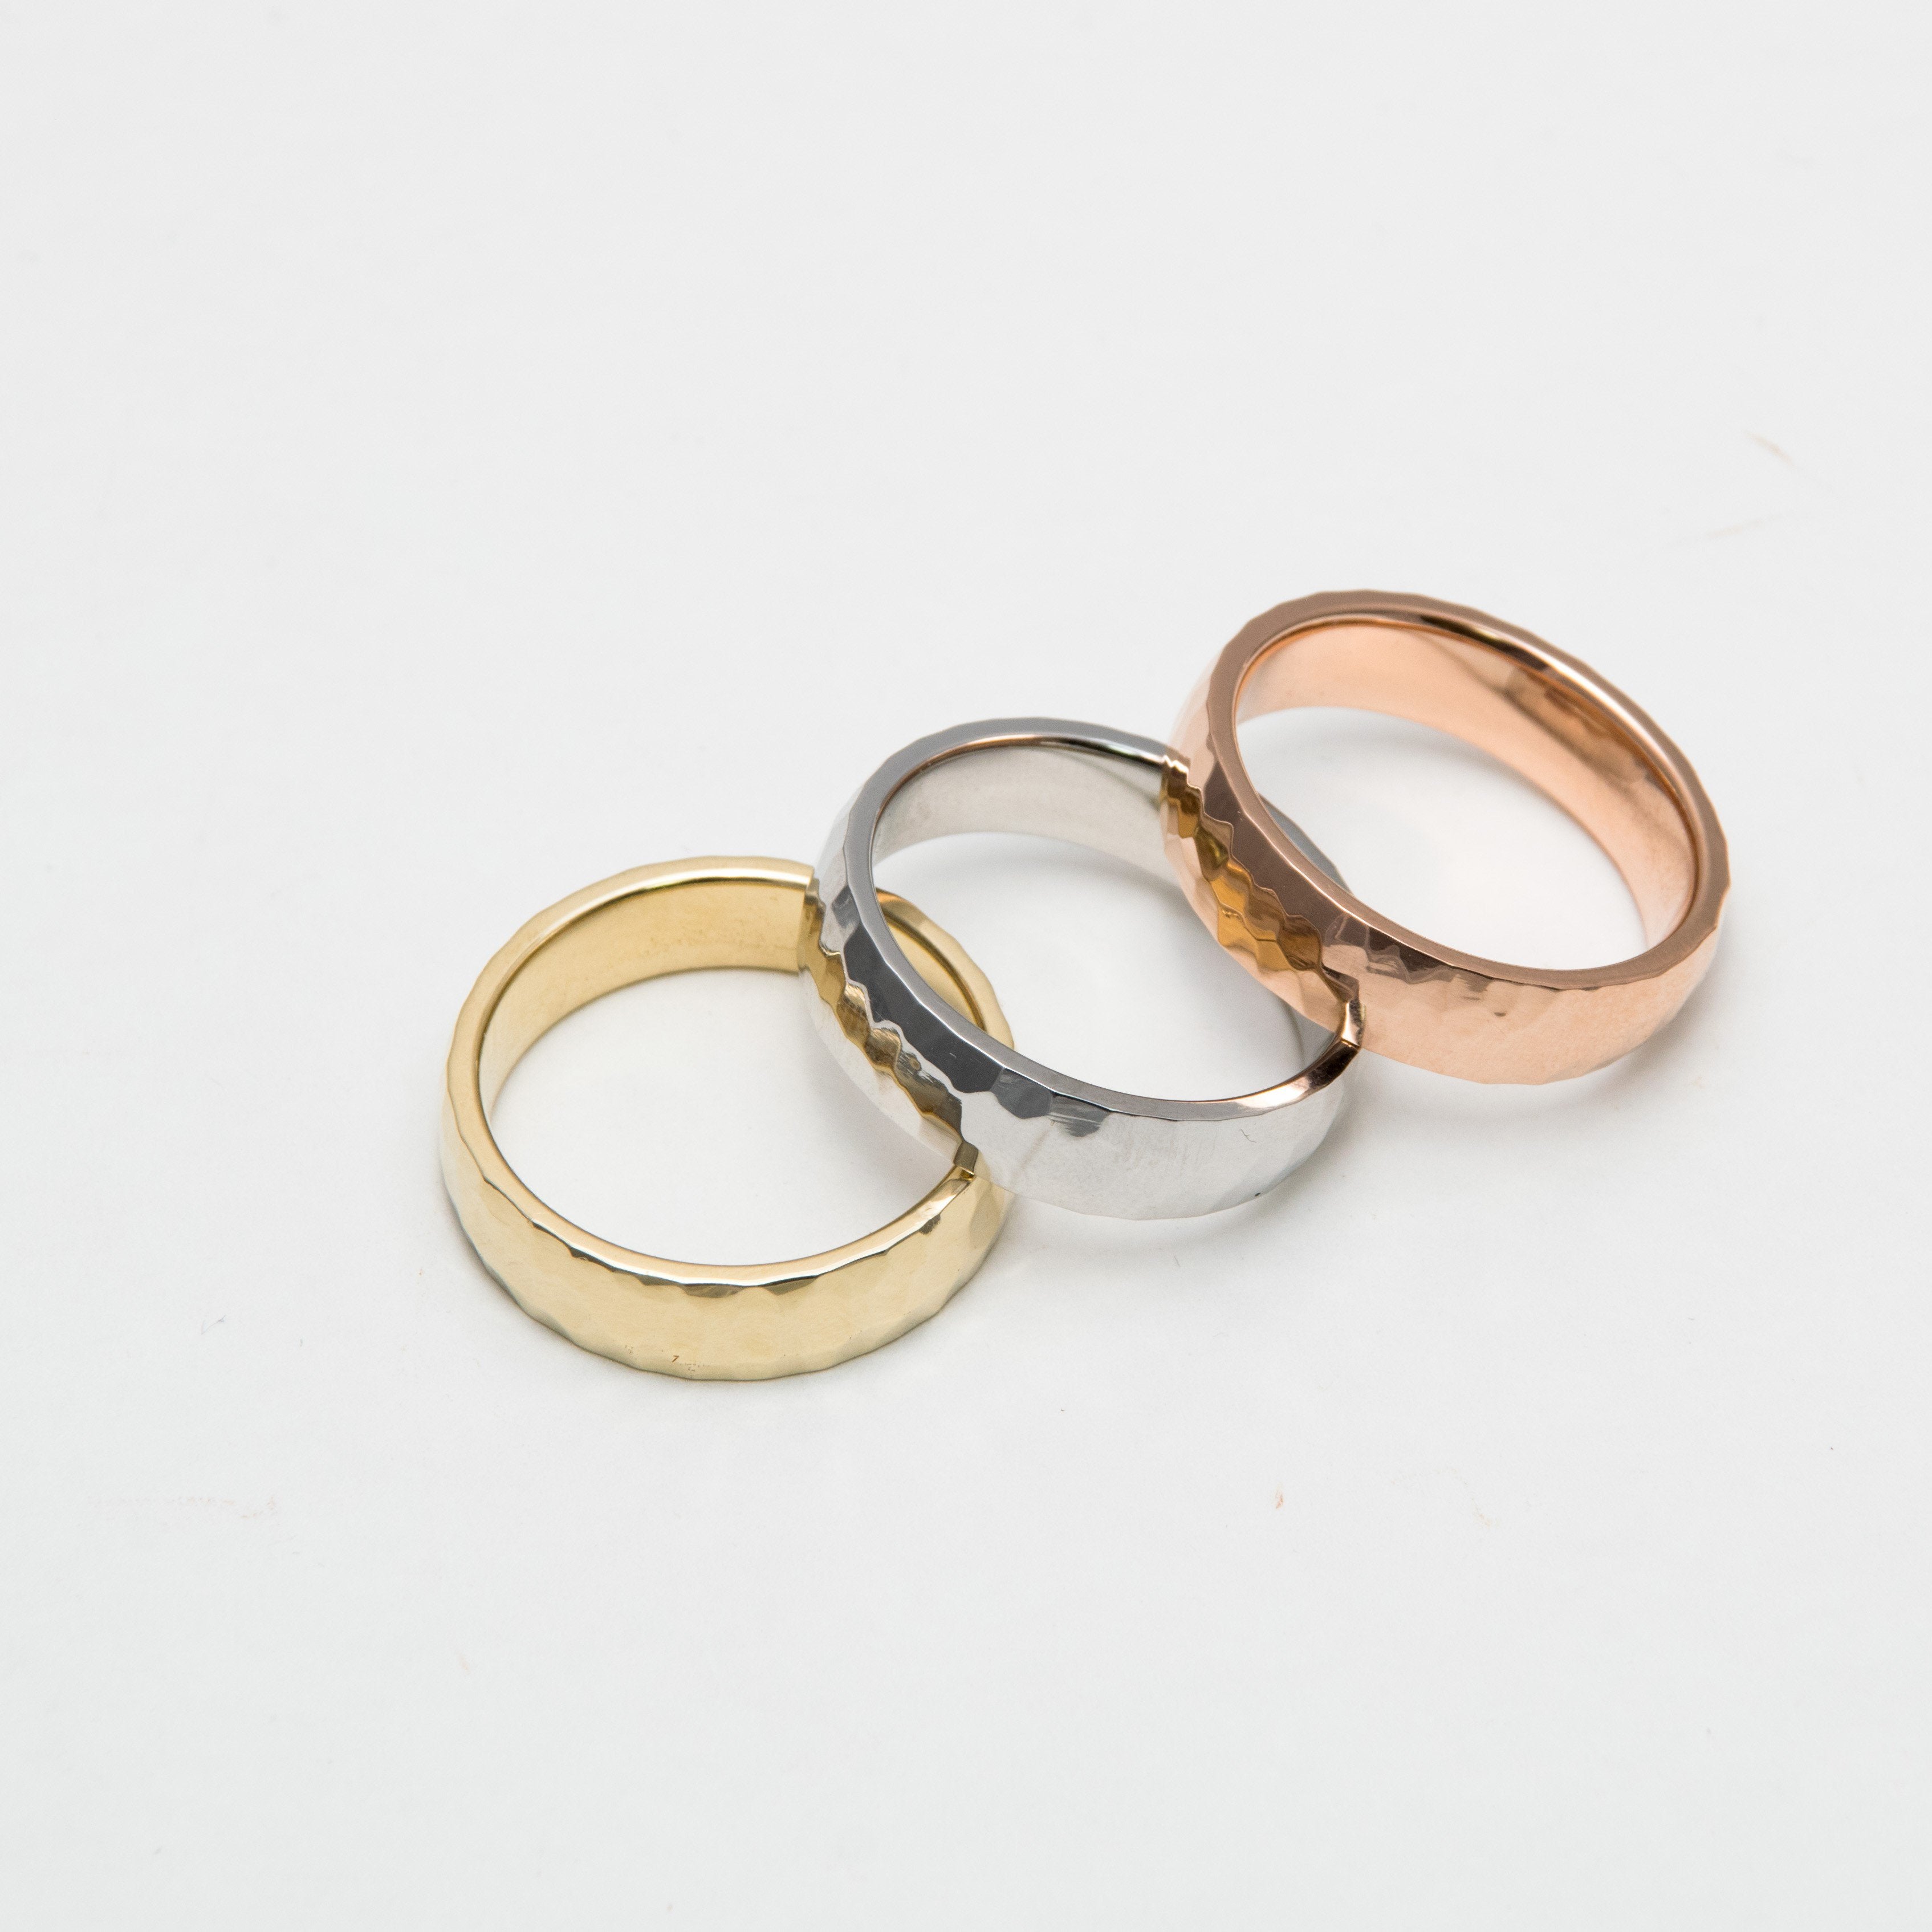 DIAMOND WEDDING BAND SET - Danelian Jewelry